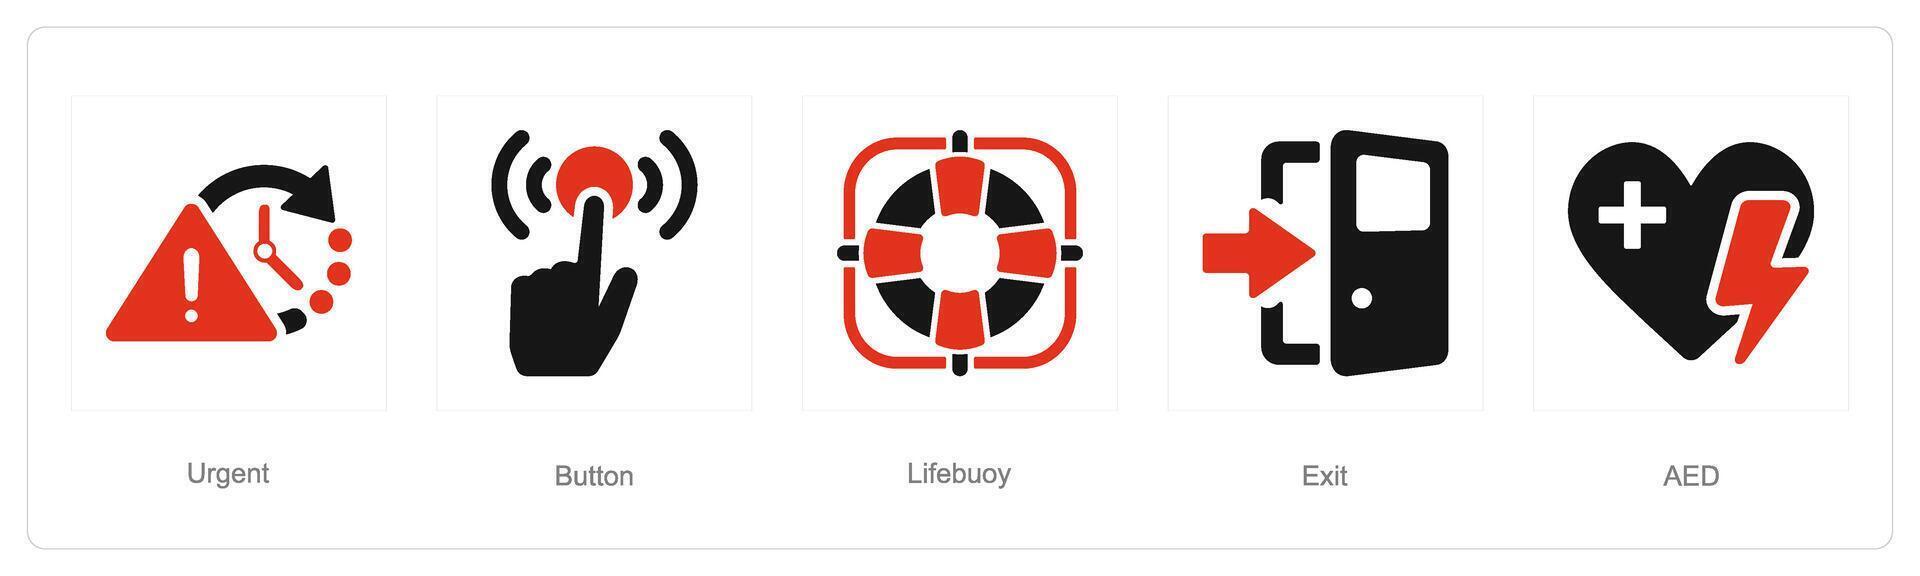 un' impostato di 5 emergenza icone come urgente, pulsante, salvagente vettore